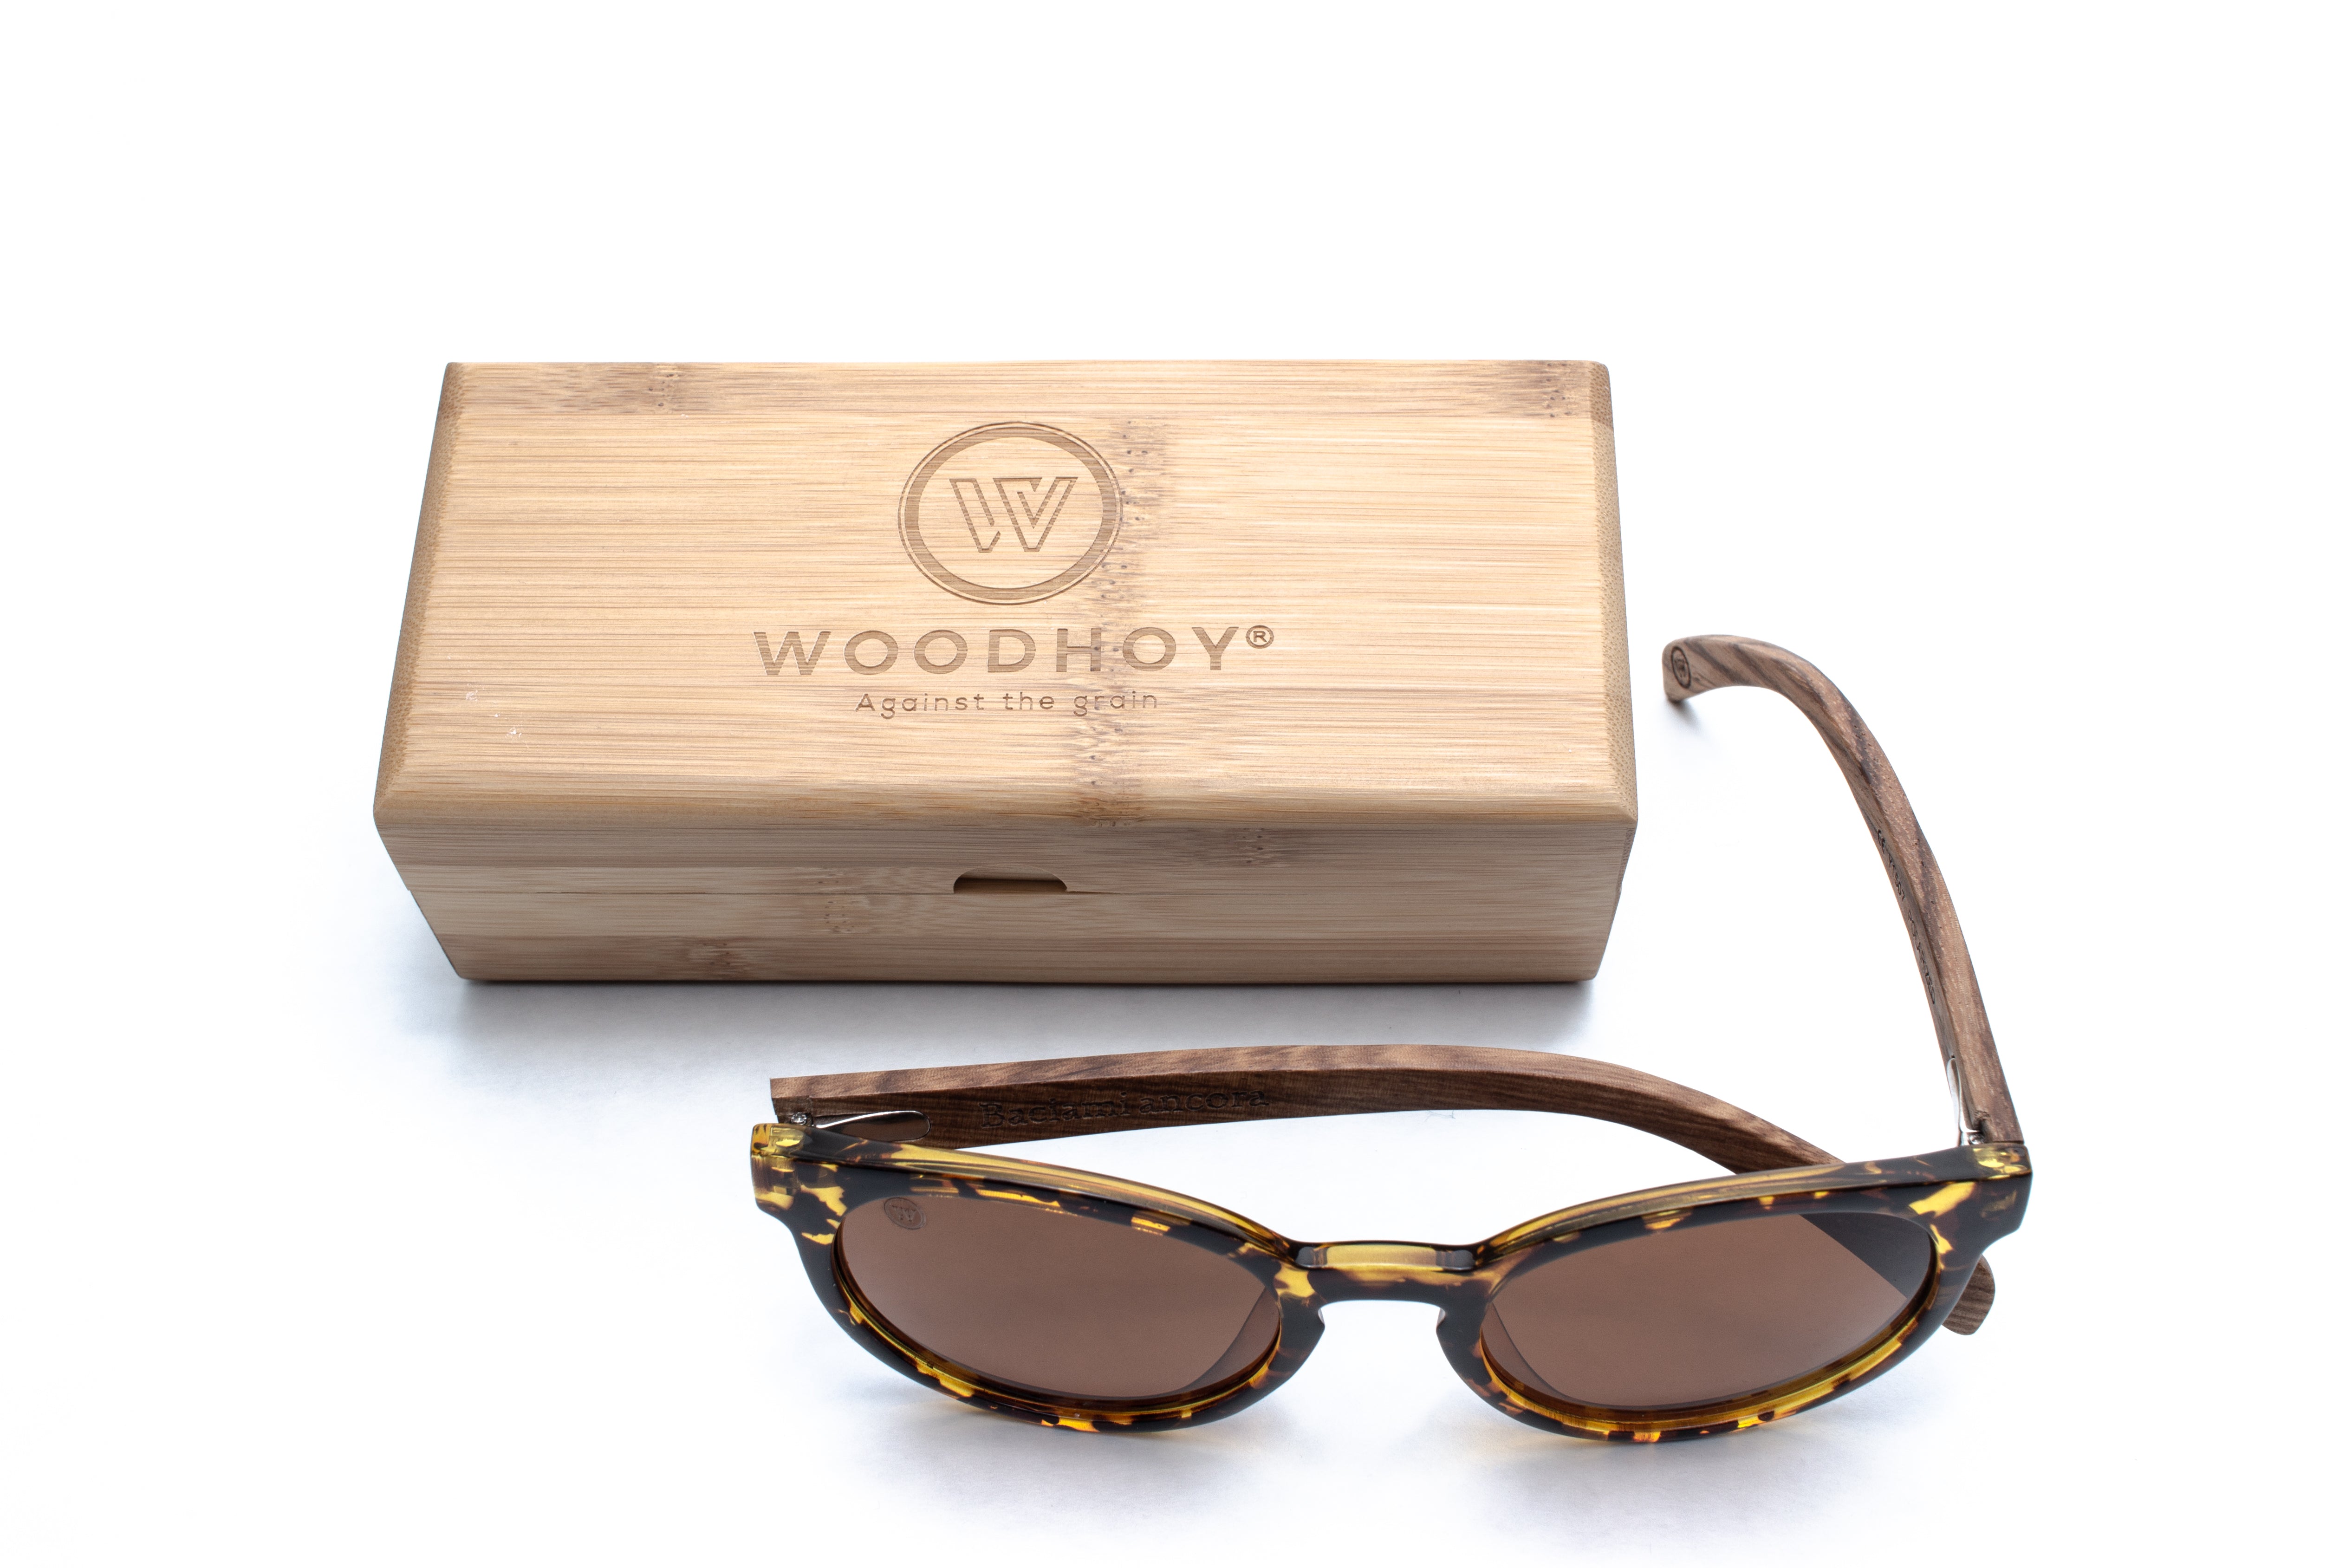 wooden sunglasses woodhoy tortuga